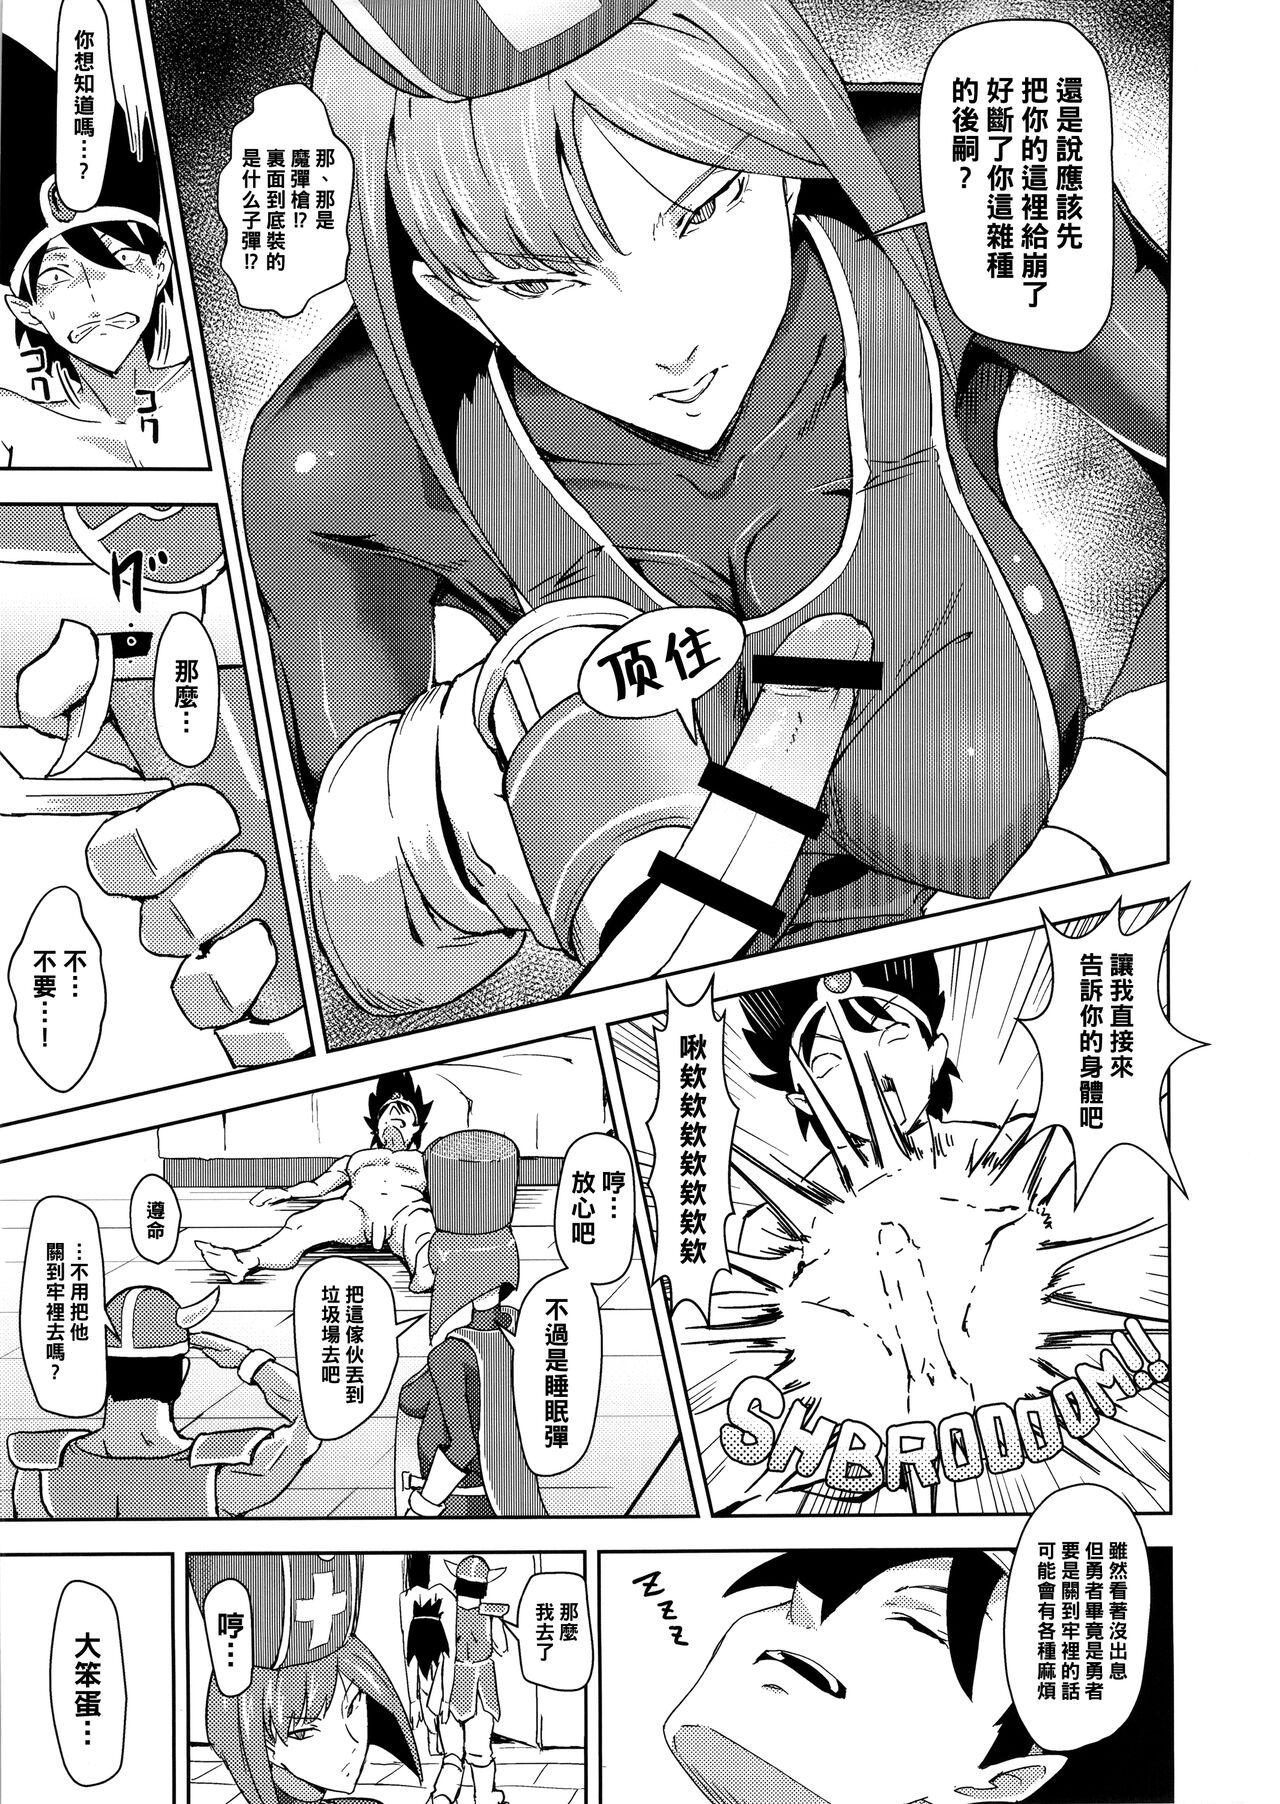 Ballbusting Namaiki na Onna Souryo ni Medapani o Kurawasero! + Shadow Galko-chan - Dragon quest iii Oshiete galko-chan Namorada - Page 9